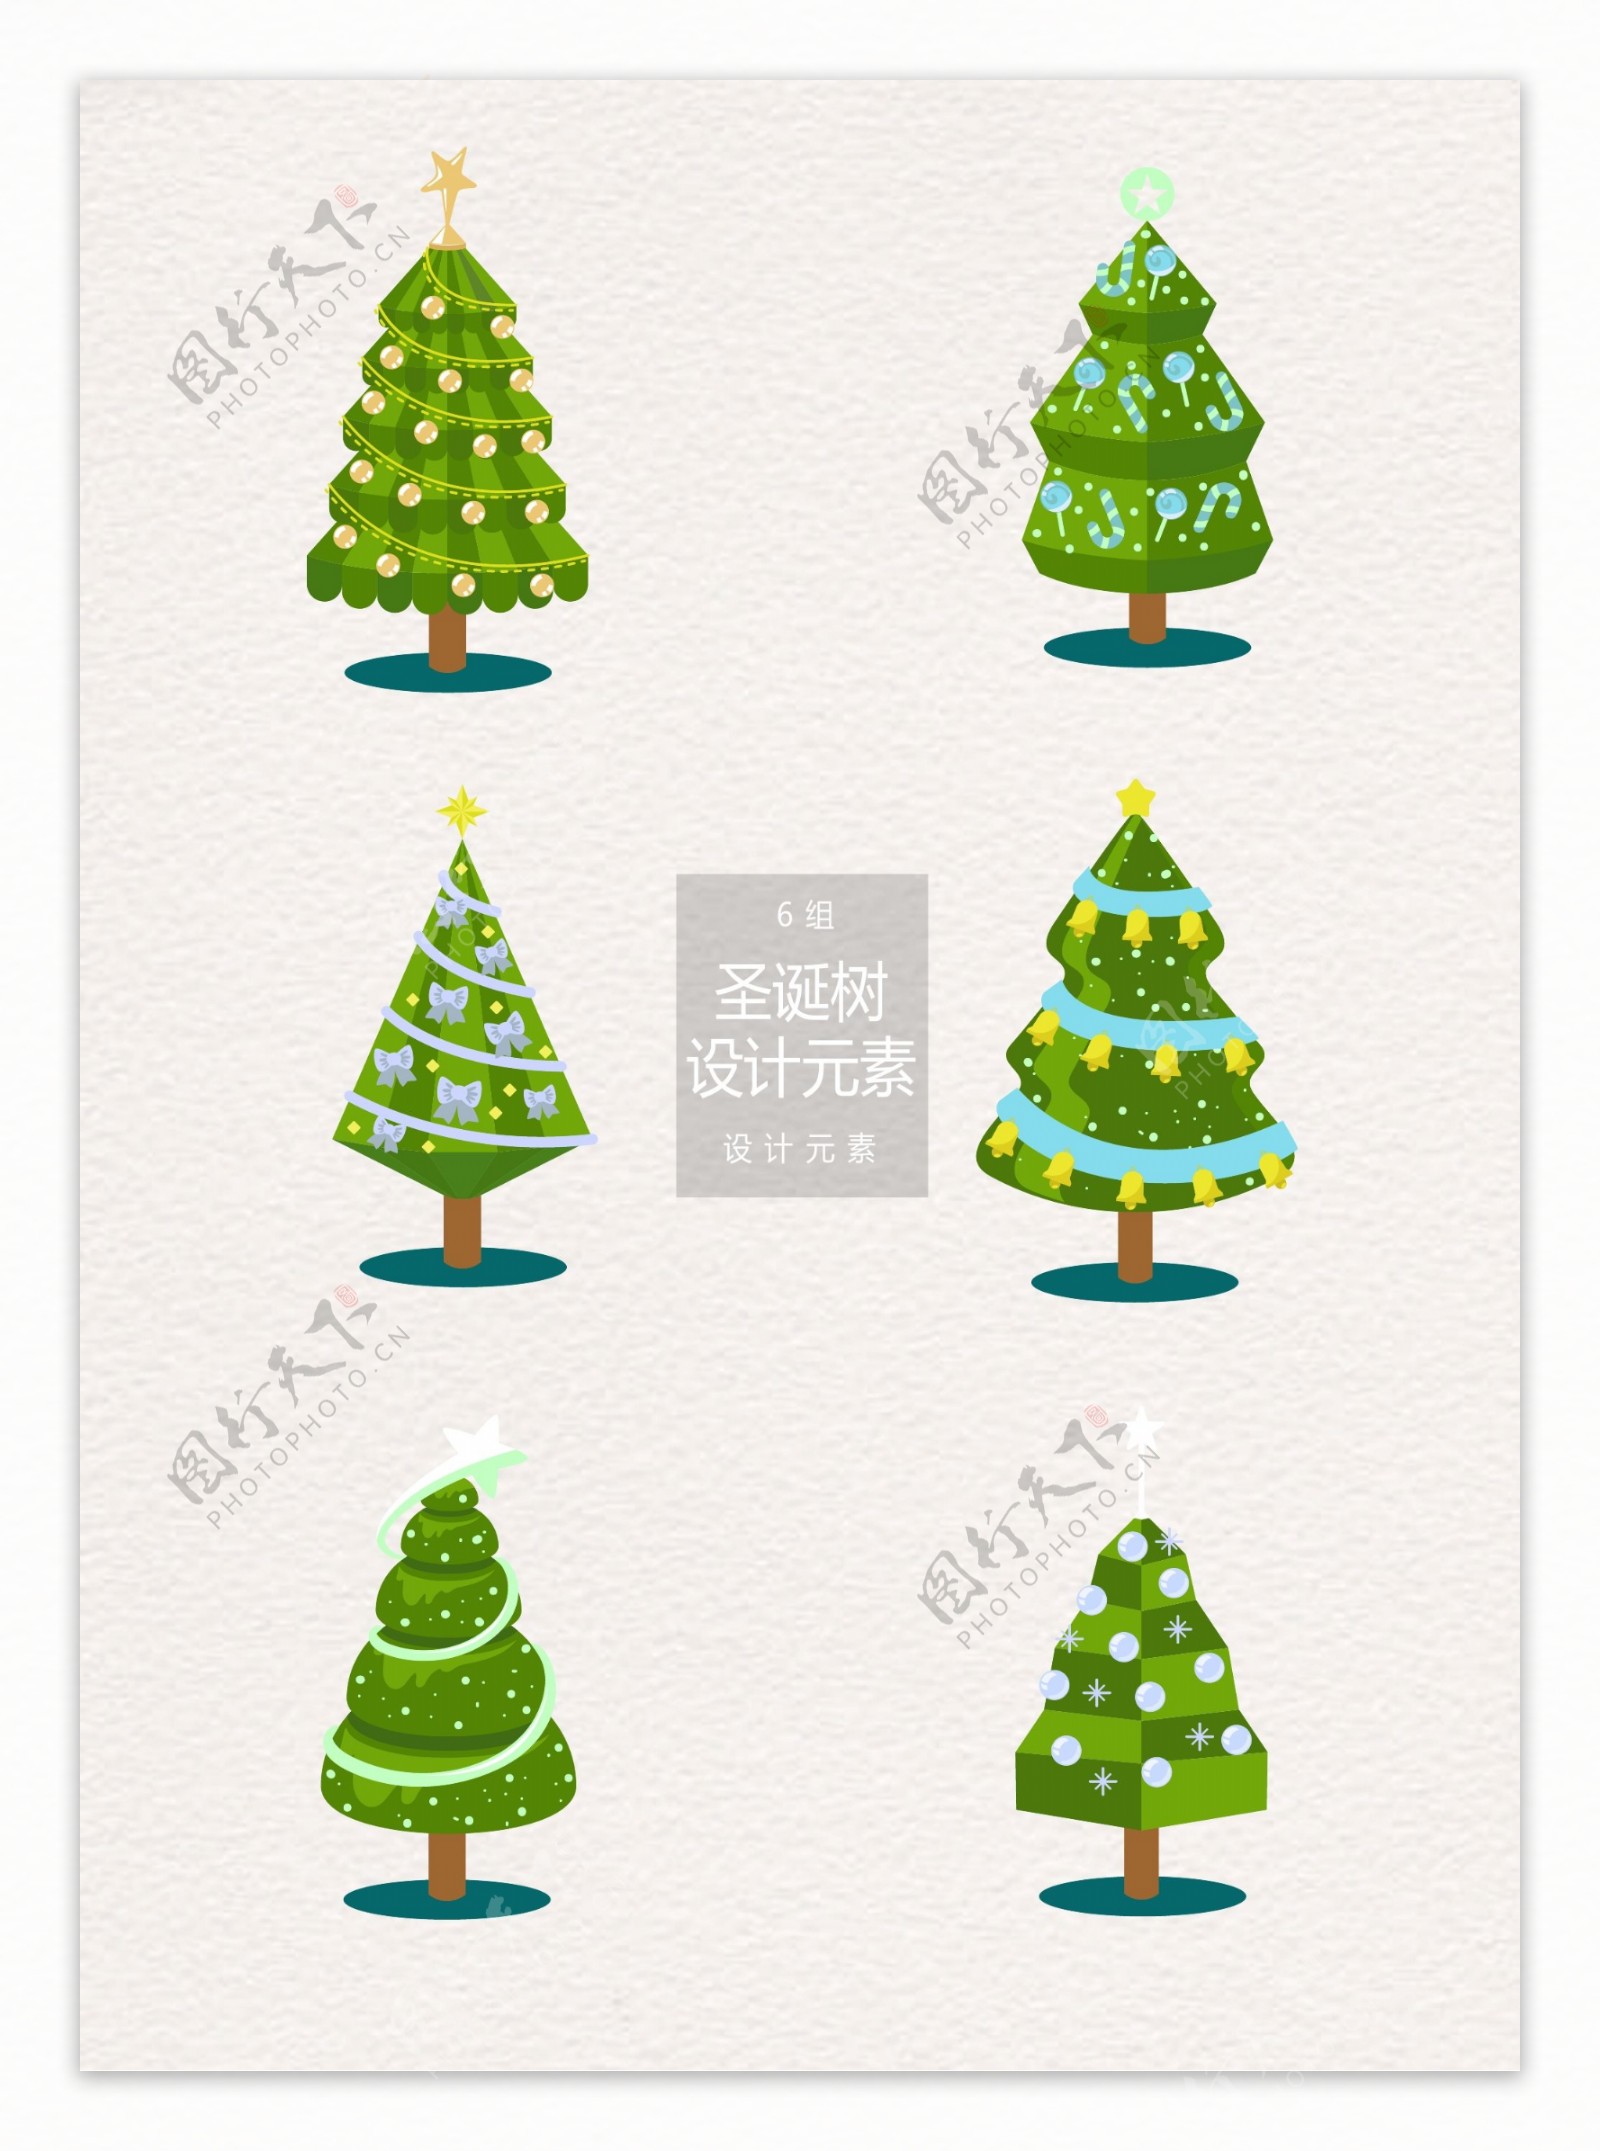 6款圣诞树设计元素